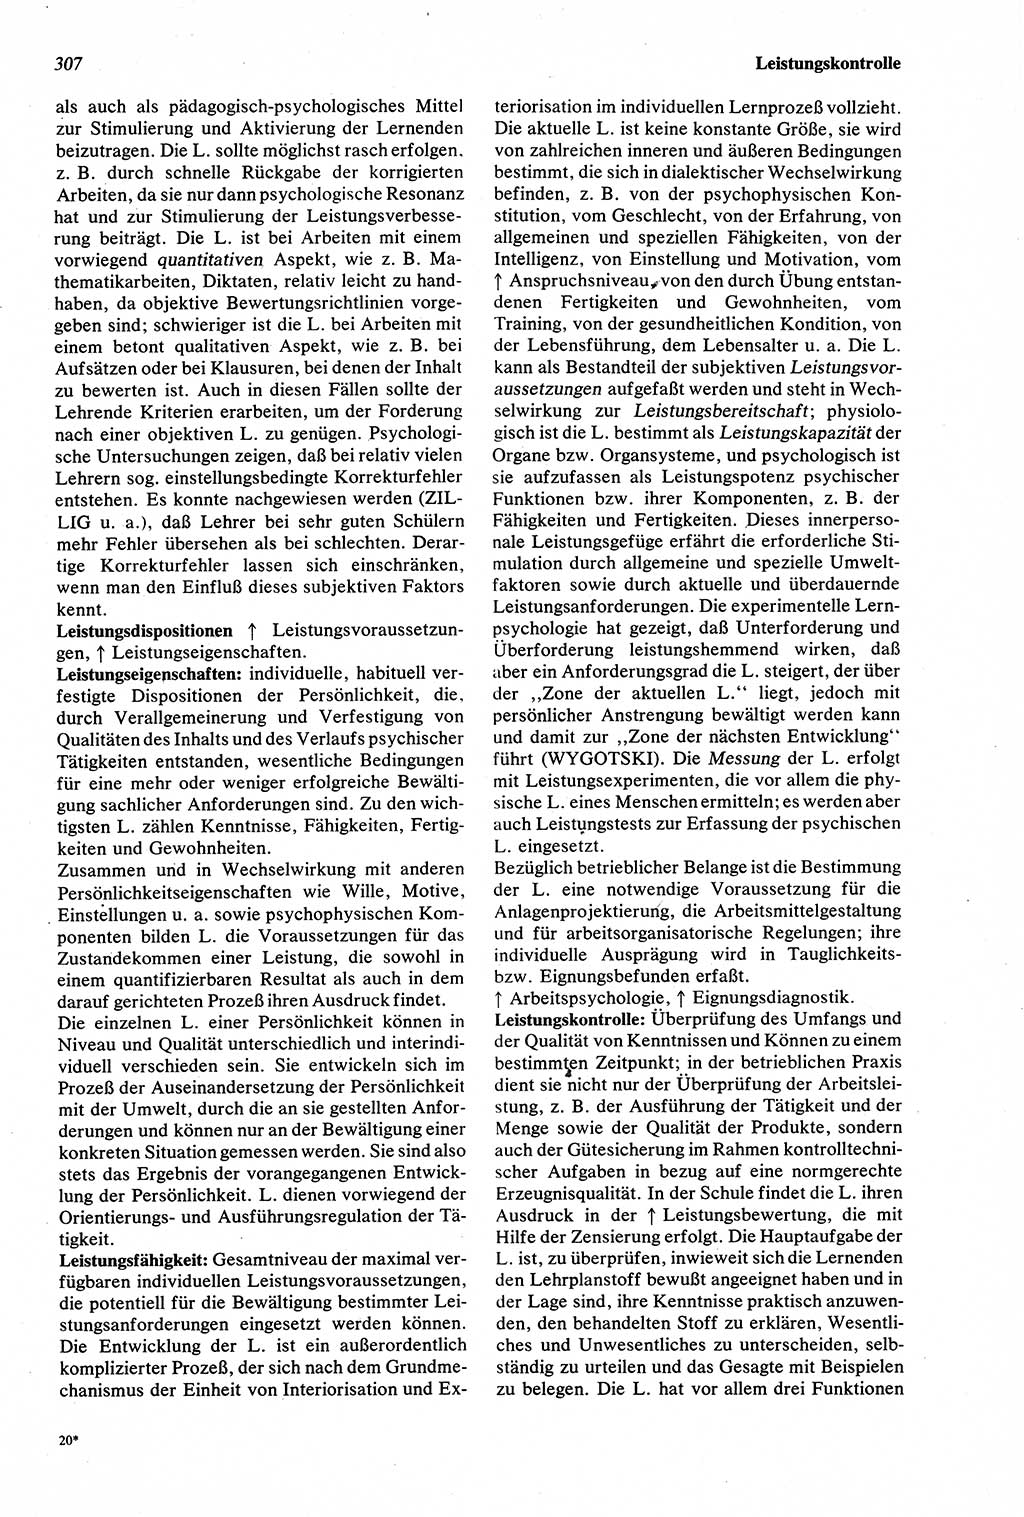 Wörterbuch der Psychologie [Deutsche Demokratische Republik (DDR)] 1976, Seite 307 (Wb. Psych. DDR 1976, S. 307)